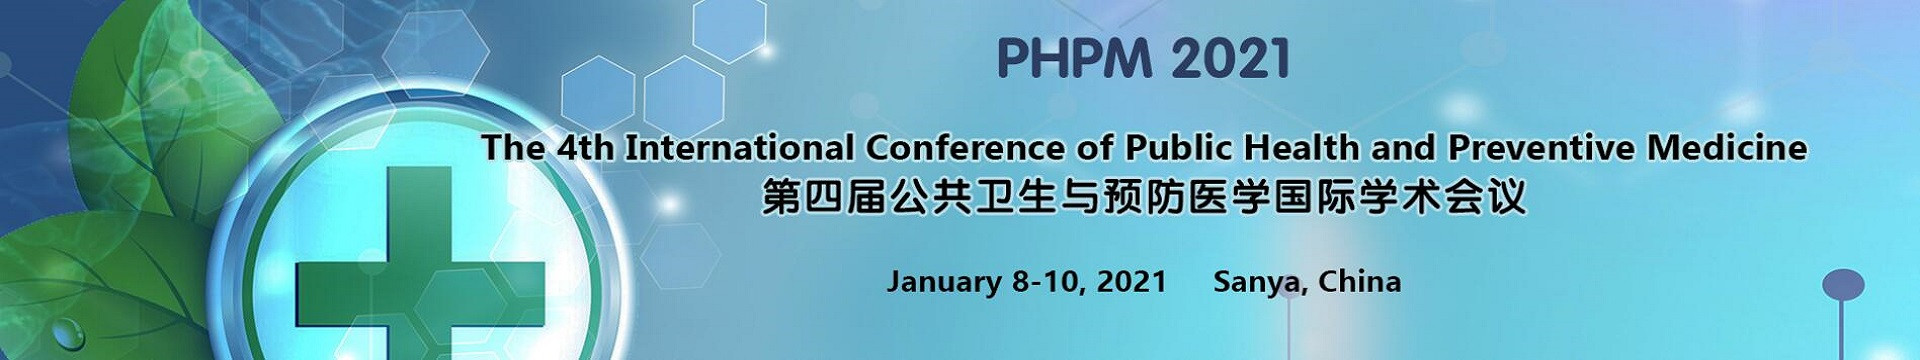 第四届公共卫生与预防医学国际学术会议(PHPM 2021)